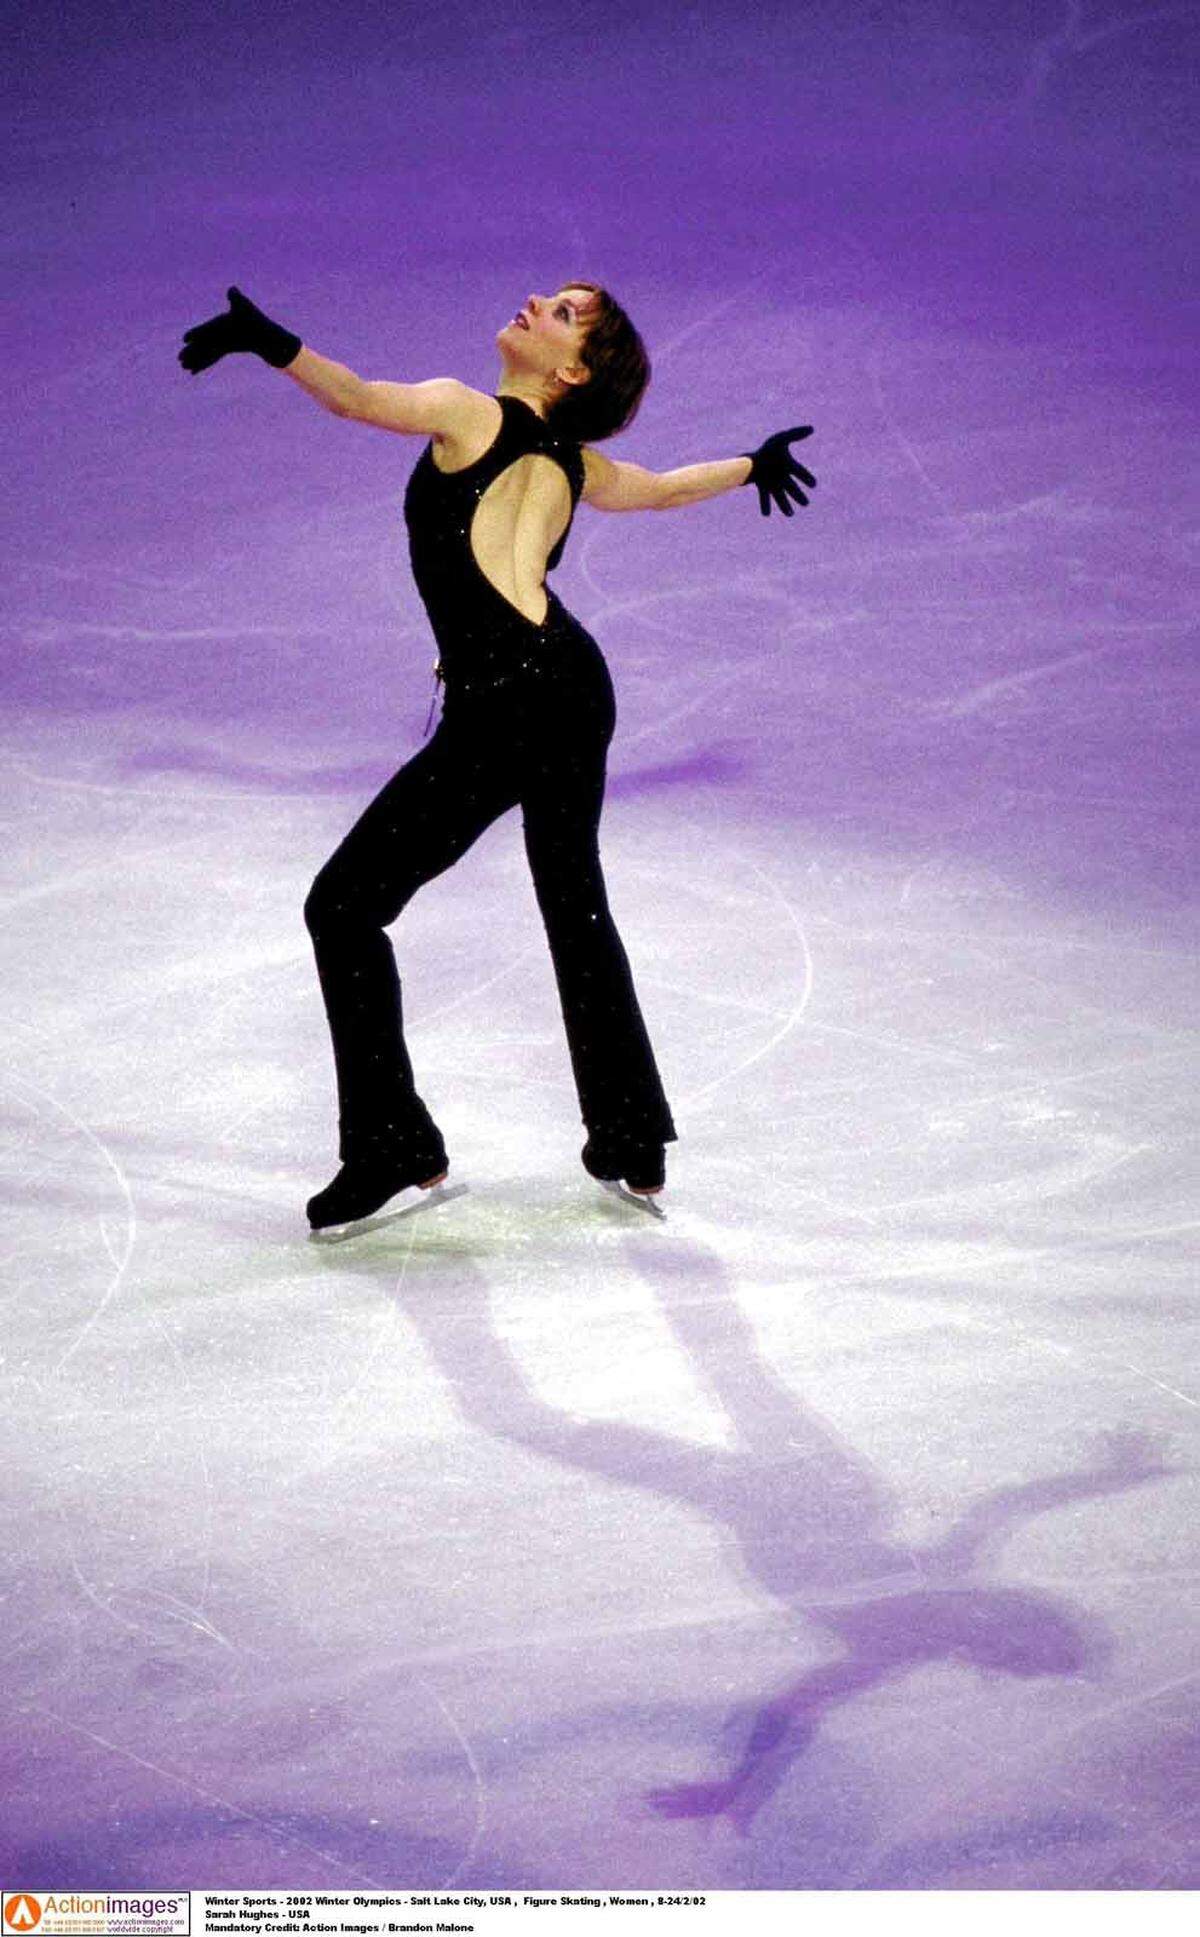 2002, Salt Lake City. Sarah Hughes gewann Gold. Sie war die zweite Olympiasiegerin im Eiskunstlauf der Damen, die zuvor nie Weltmeisterin gewesen war und es auch danach nicht wurde. Hughes beendete bereits ein Jahr nach ihrem größten Triumph ihre Wettkampfkarriere.